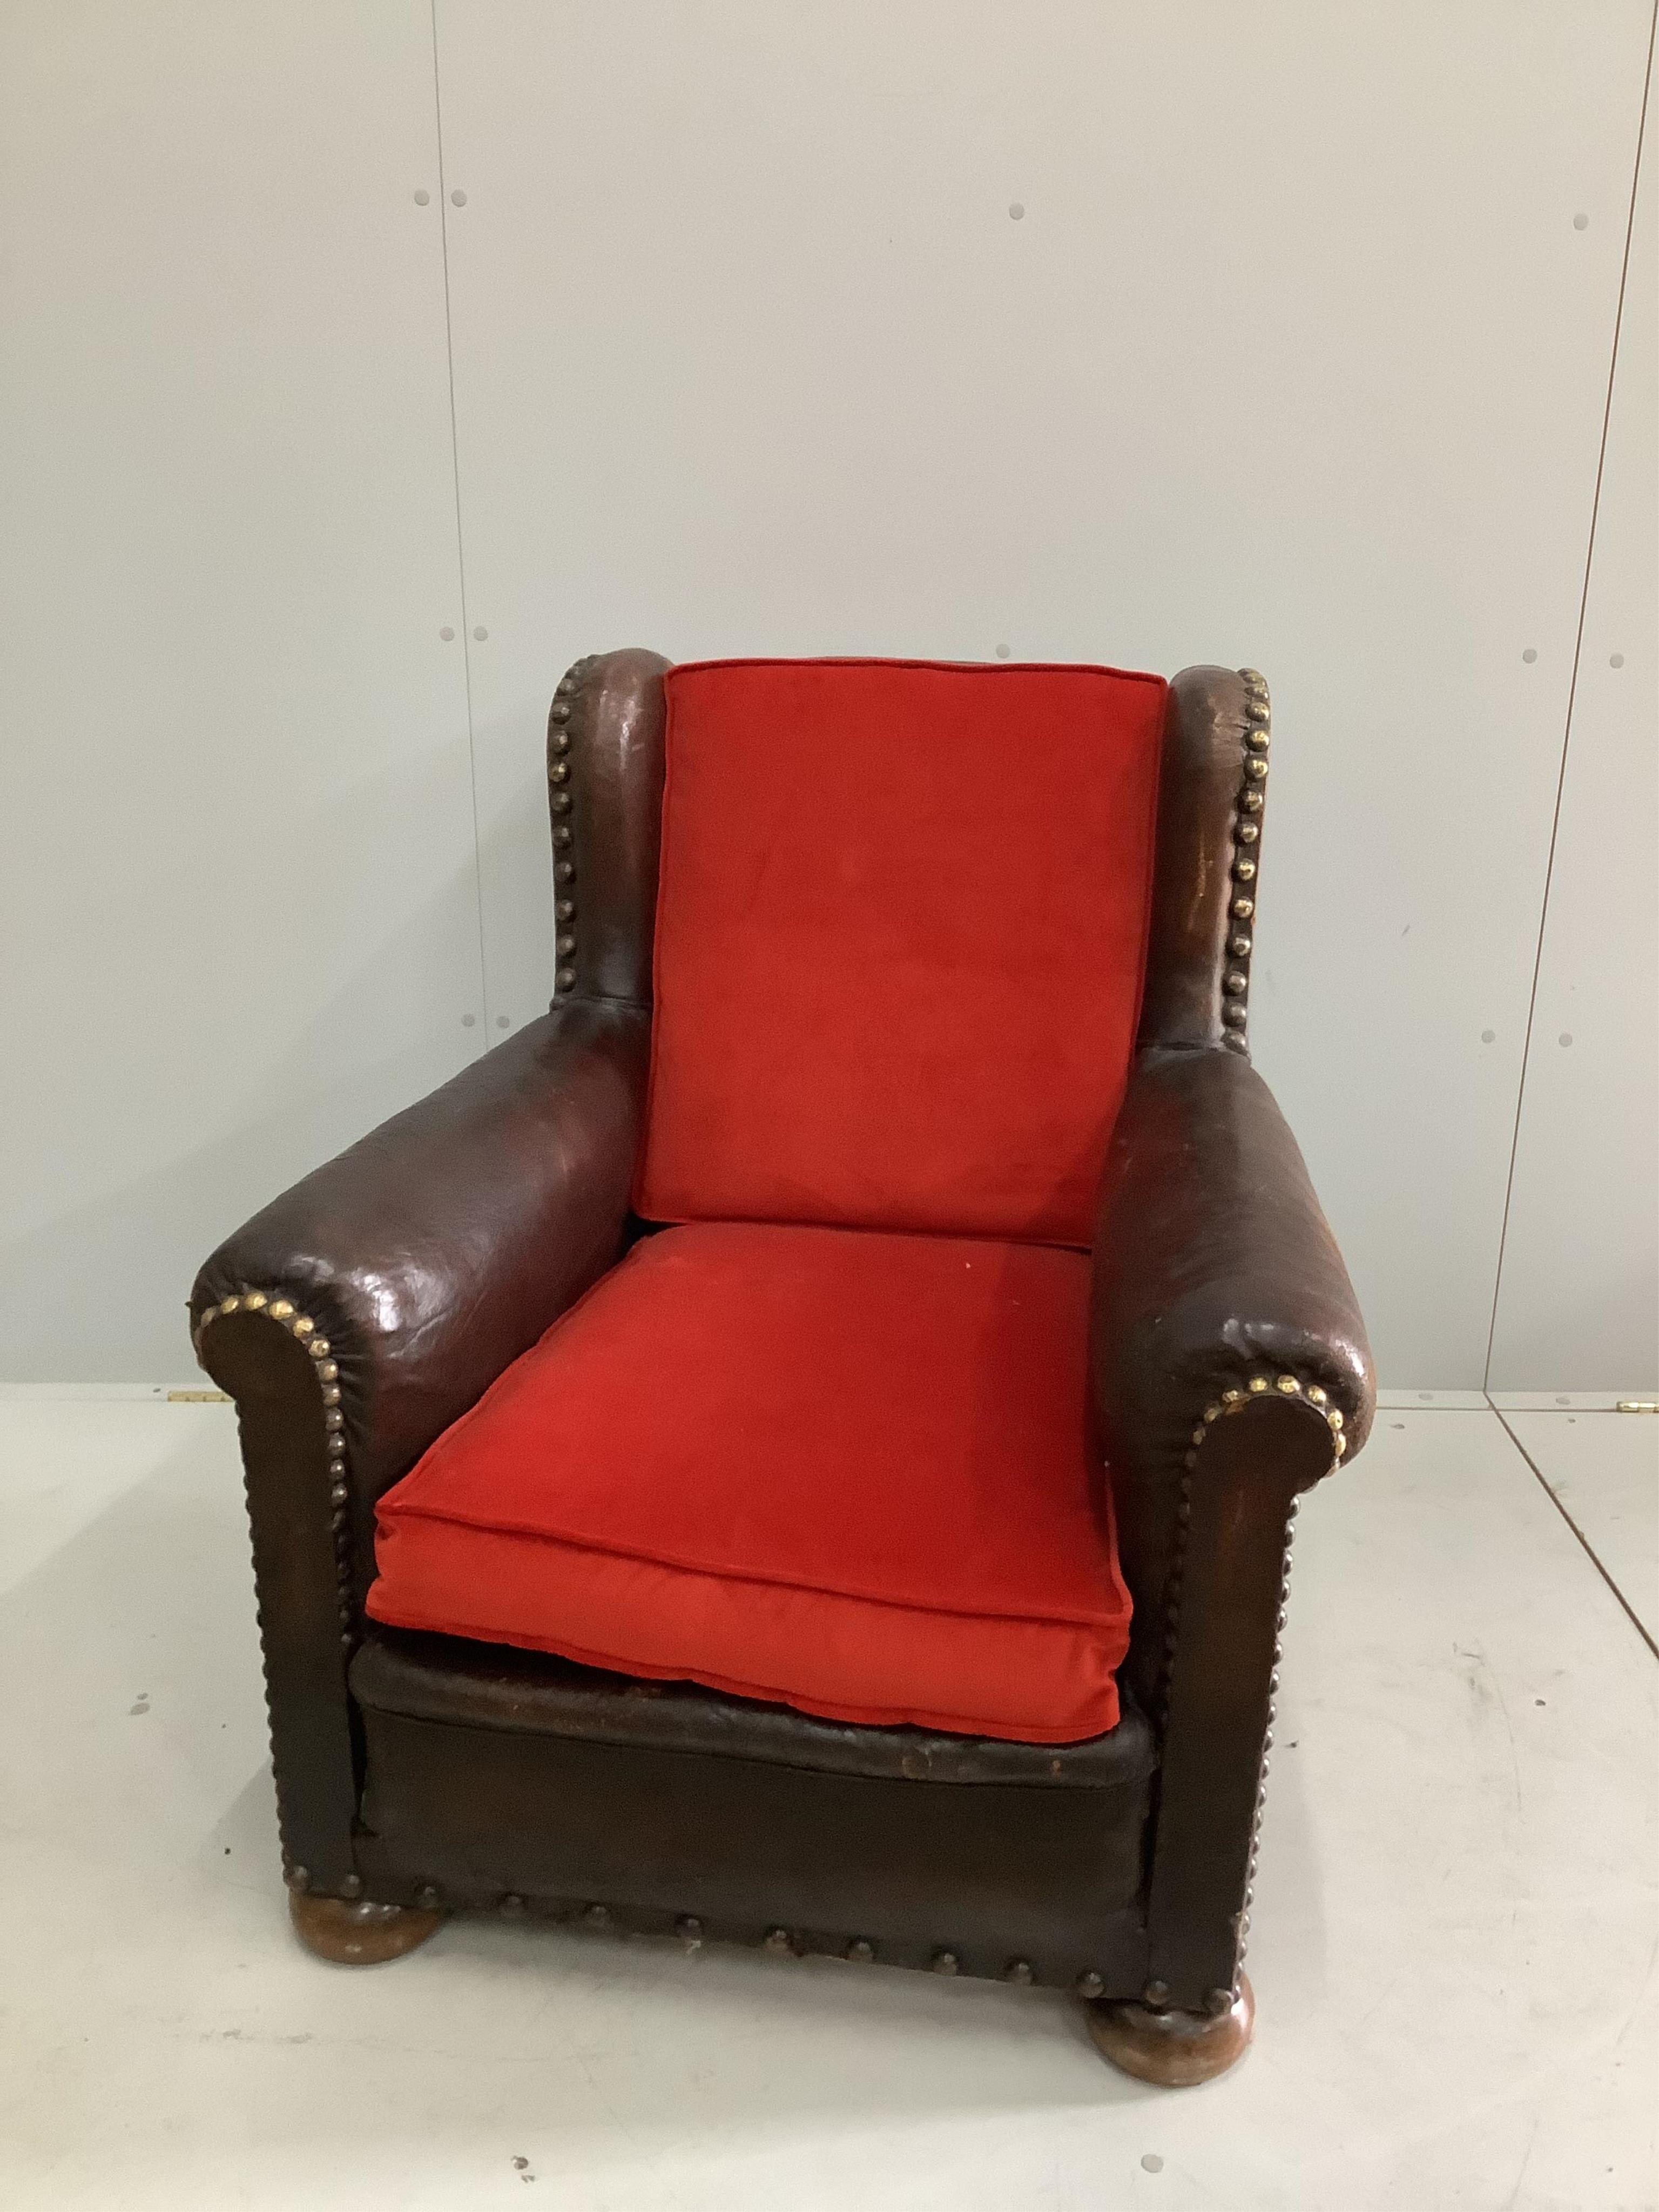 An early 20th century studded tan leather club armchair, width 84cm, depth 90cm, height 92cm. Condition - fair